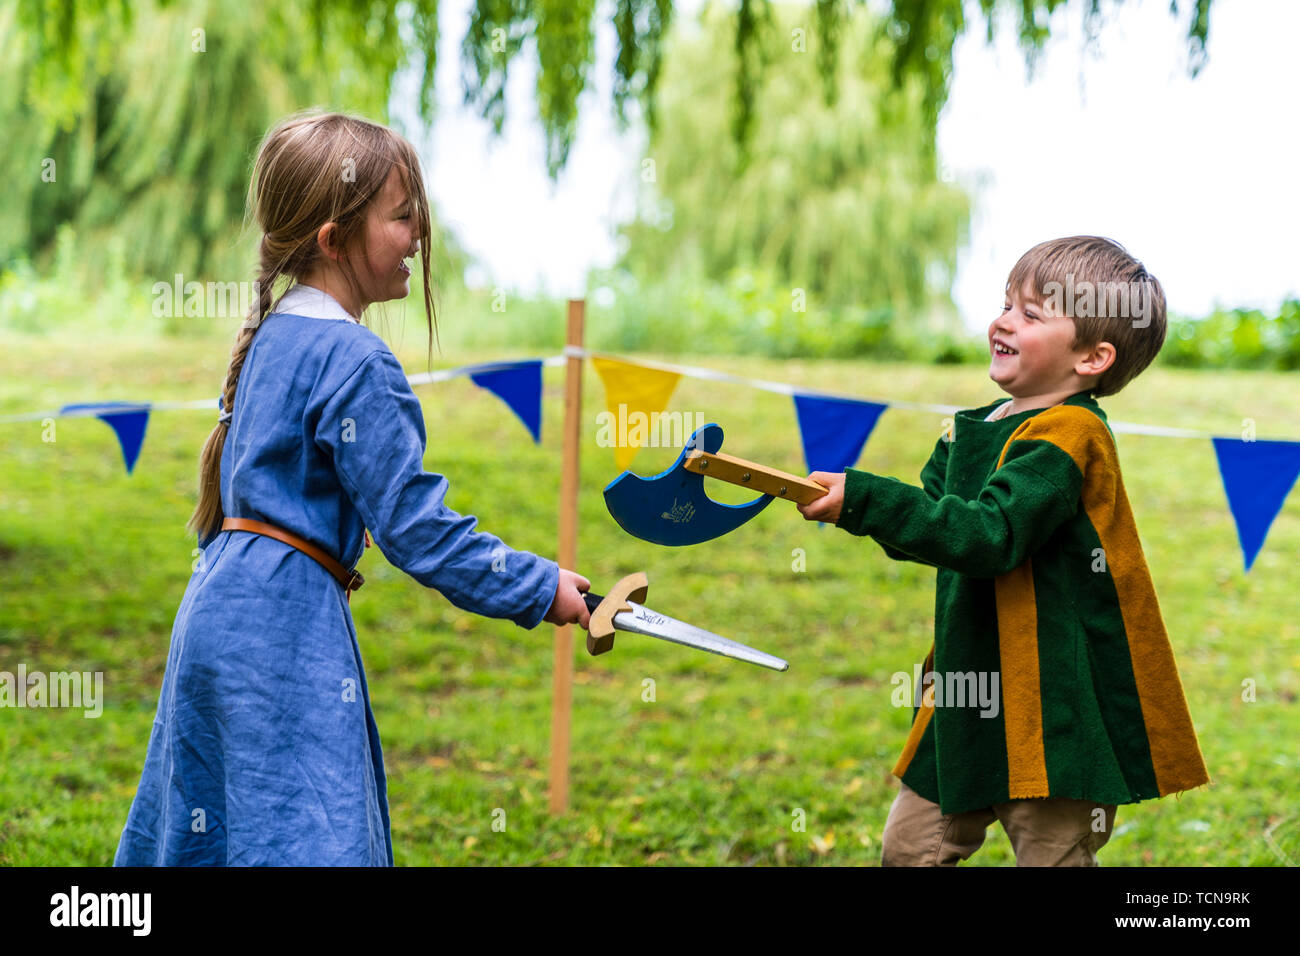 Le week-end médiéval. Portrait de deux jeunes enfants, garçon, 4-5 ans, et une fille, 5-6 ans, vêtu de vêtements médiévaux et des combats à l'épée et espièglerie ax dans l'herbe avec saule derrière. Banque D'Images